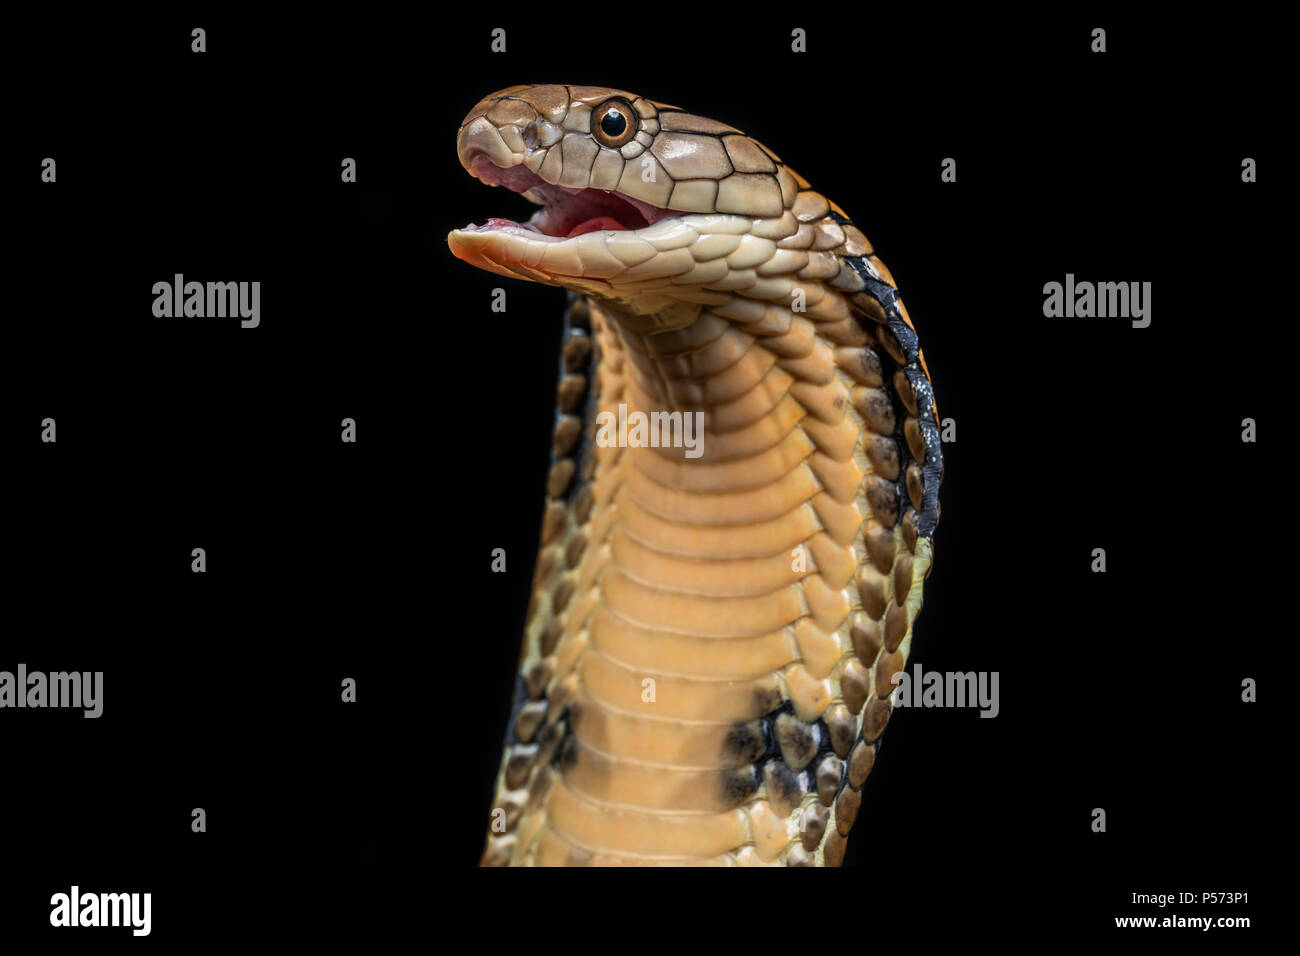 Die königskobra (ophiophagus Hannah), auch als hamadryad bekannt, ist eine giftige Schlange Arten in der Familie Elapidae Stockfoto